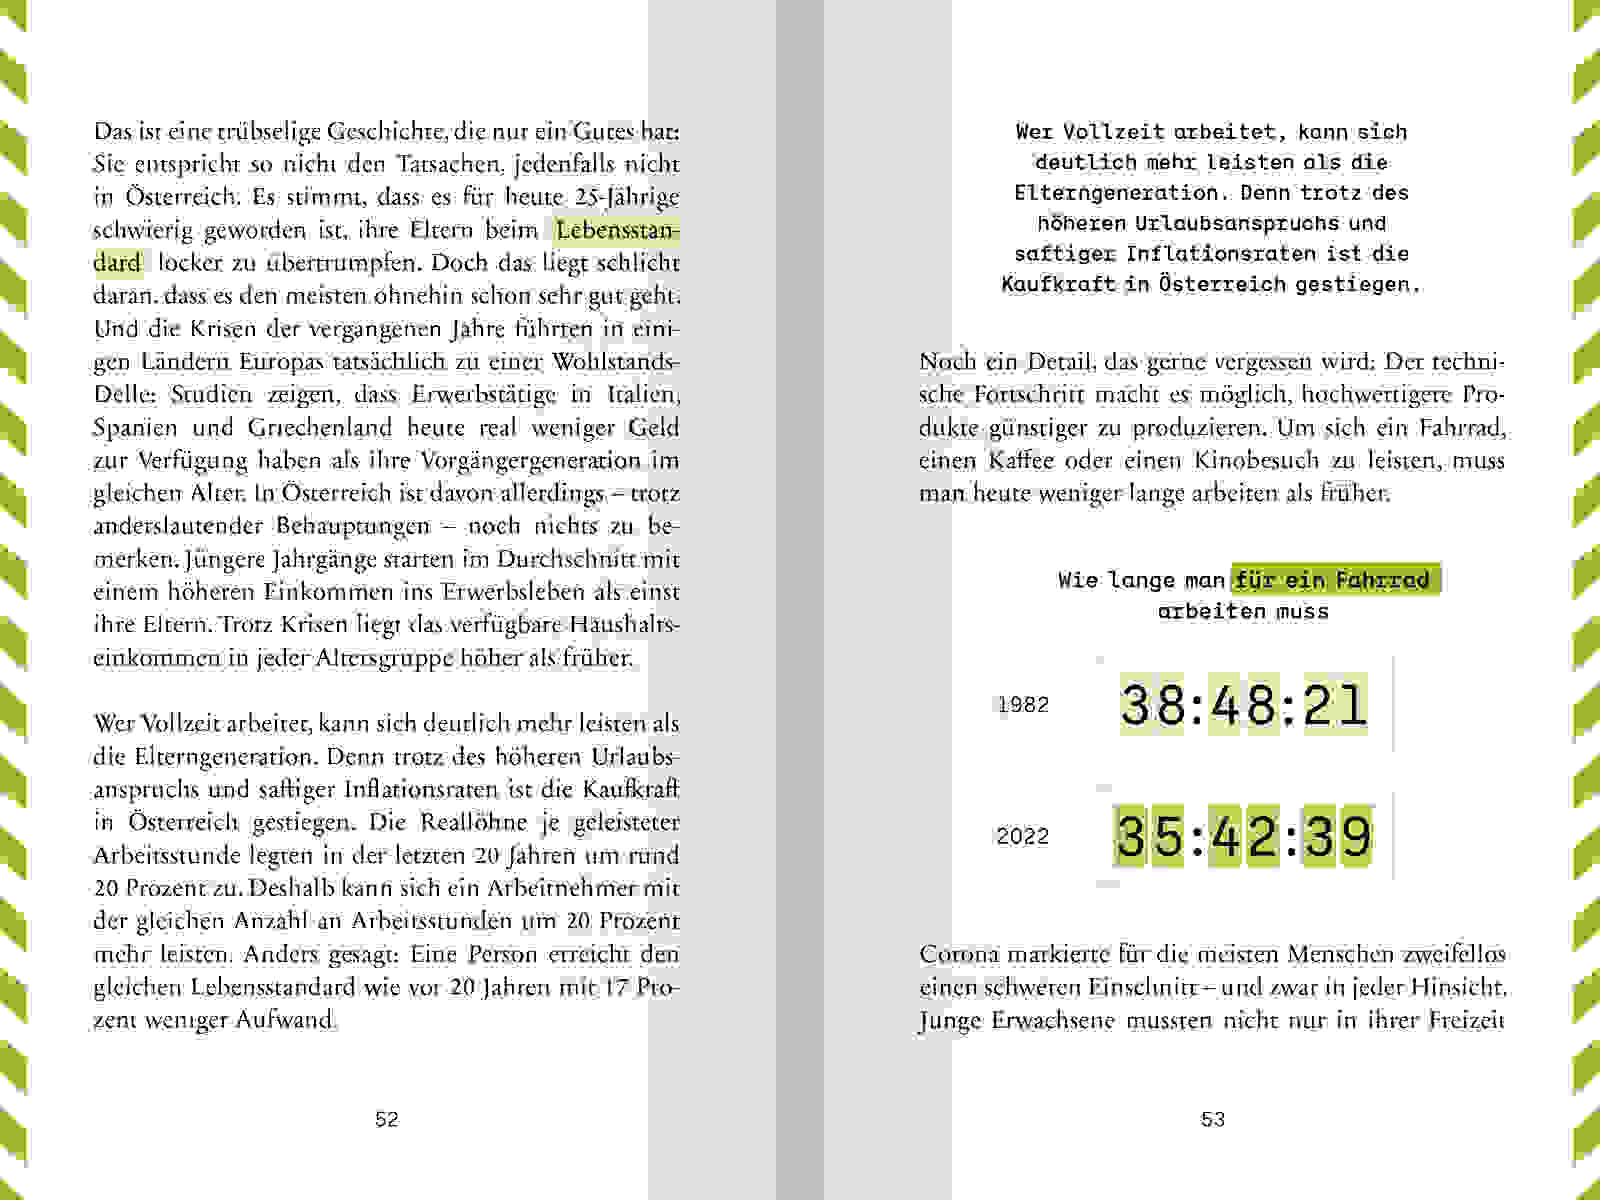 WEB AA Handbuch Wirtschaftsmythen 120x180mm S52 53